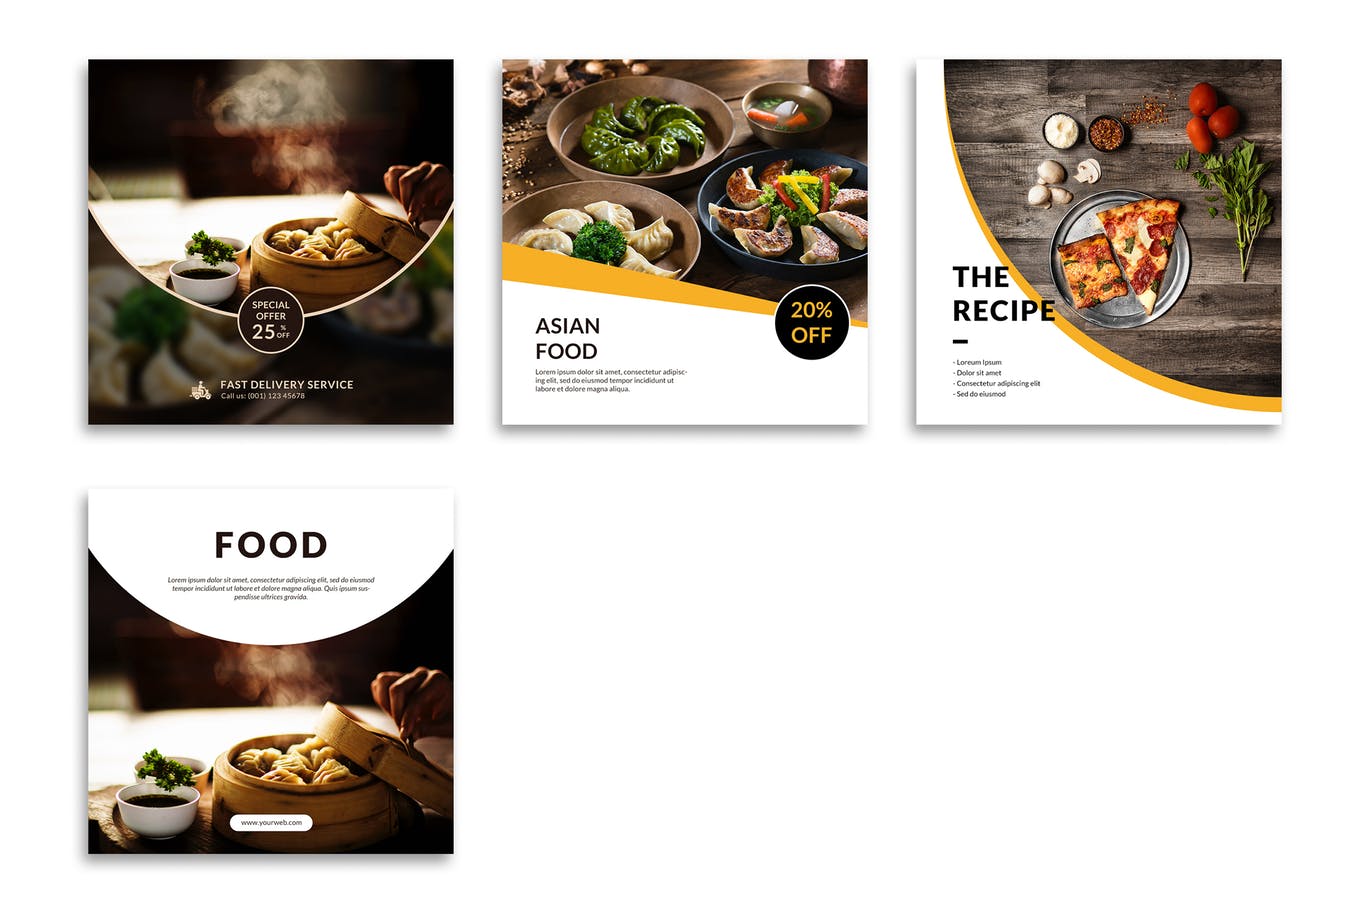 汉堡西餐厅食品大促销Instagram帖子设计模板 Food Instagram Posts Template设计素材模板